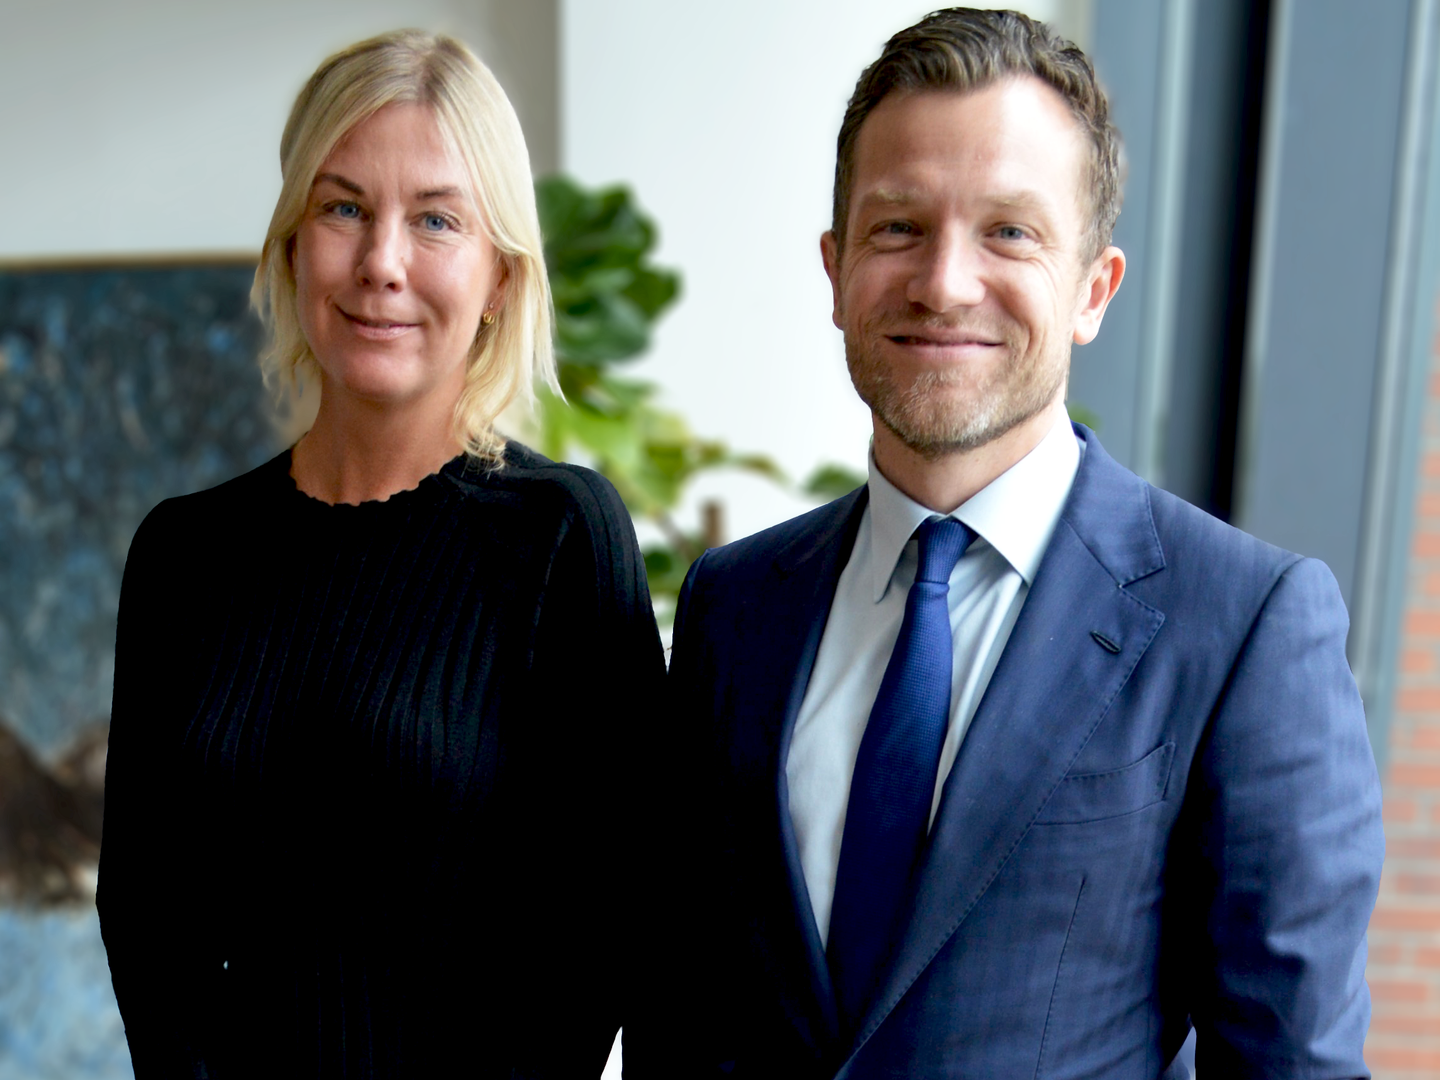 Cecilie Rust og Lasse Vittus Hupfeld vender nu retur til Bech-Bruun, hvor de begge er uddannede som advokater. | Foto: Bech-Bruun / PR